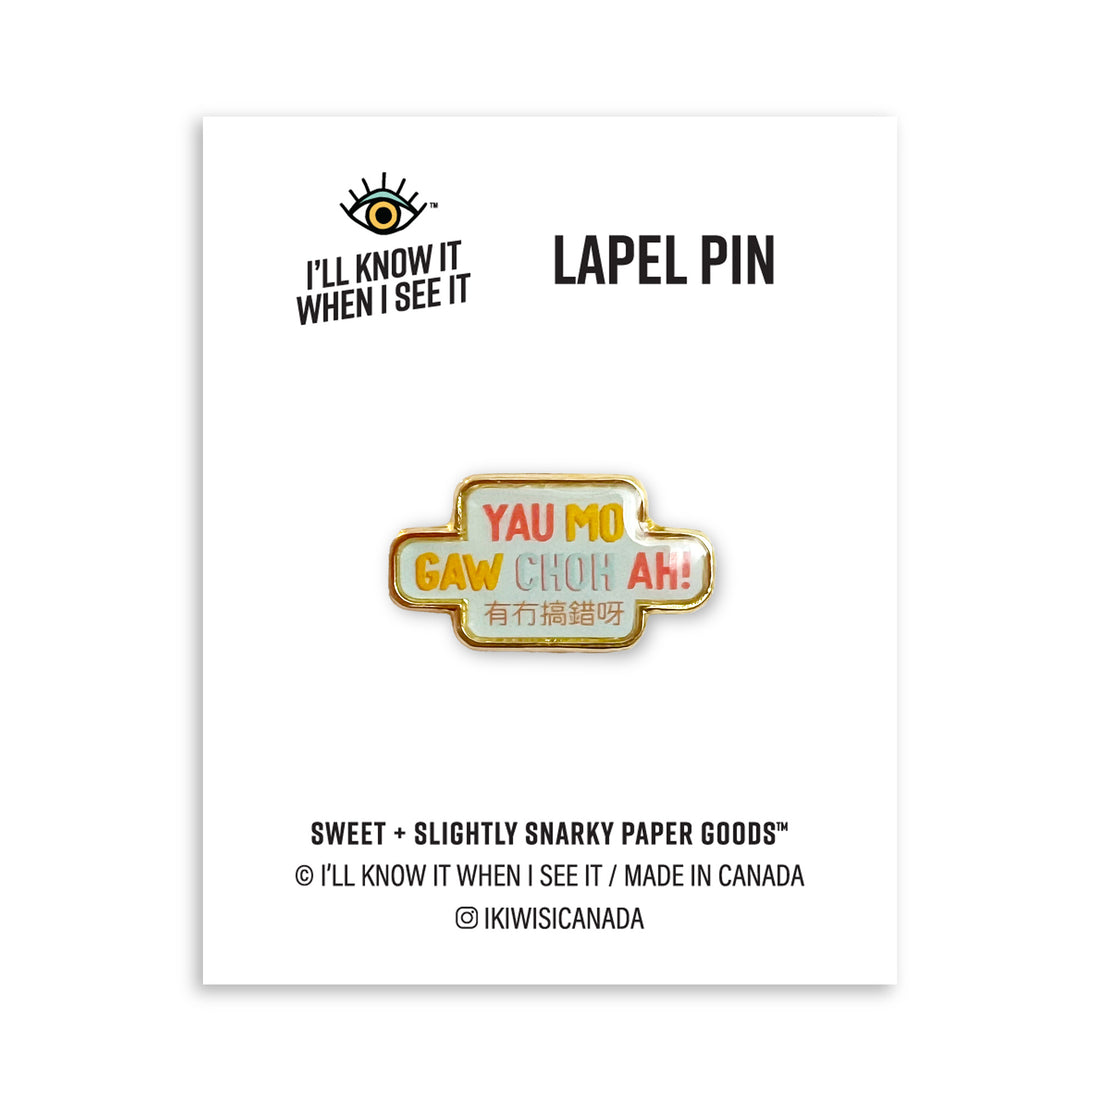 Yau mo gaw choh ah (有冇搞錯呀) lapel pin by I&